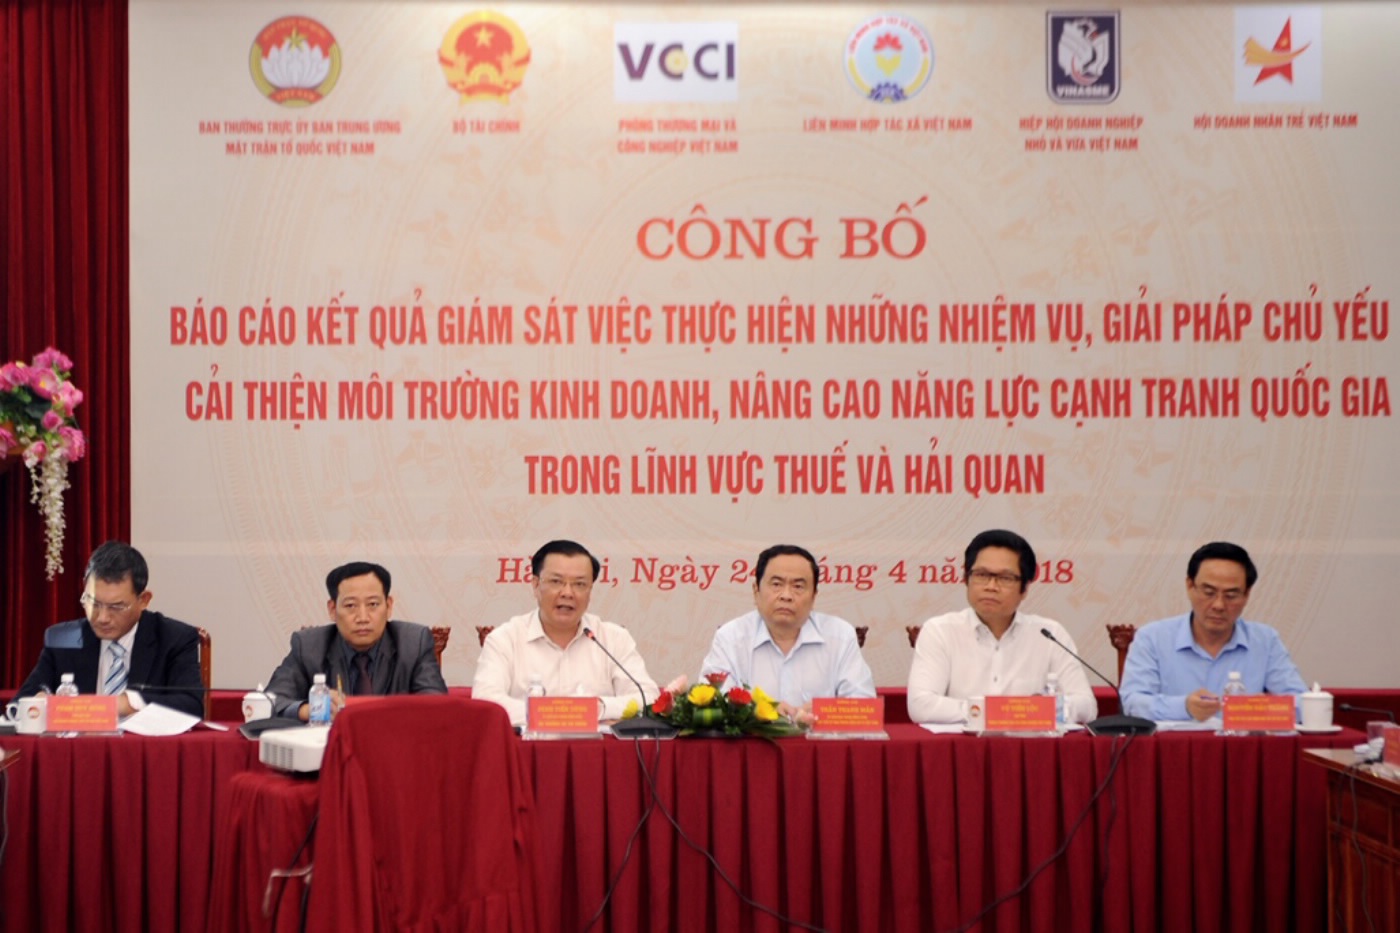 Ủy ban Trung ương MTTQ Việt Nam, Bộ Tài chính, VCCI, Liên minh HTX Việt Nam, Hiệp hội DNNVV, Hội Doanh nhân trẻ Việt Nam công bố kết quả giám sát trong lĩnh vực thuế và hải quan.